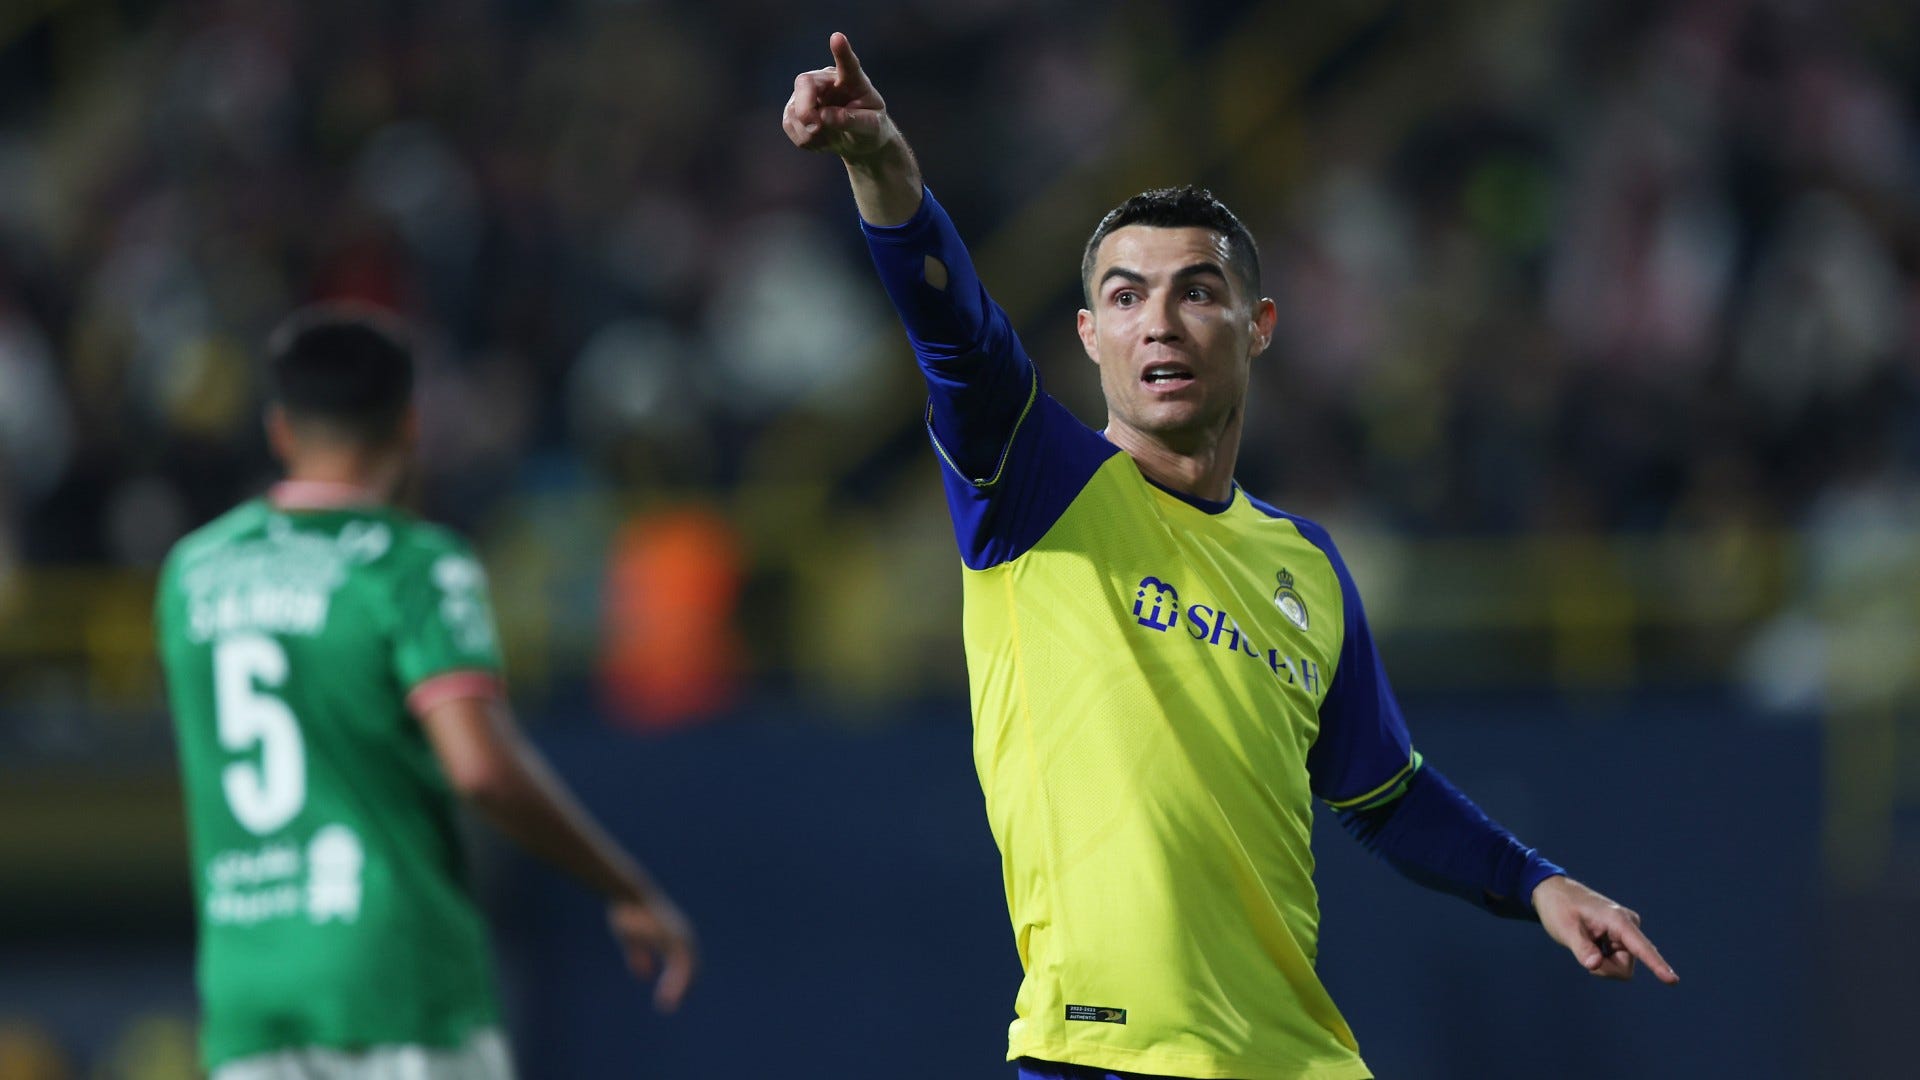 Trainer von Cristiano Ronaldo sicher: "Er wird nach Europa zurückkehren"